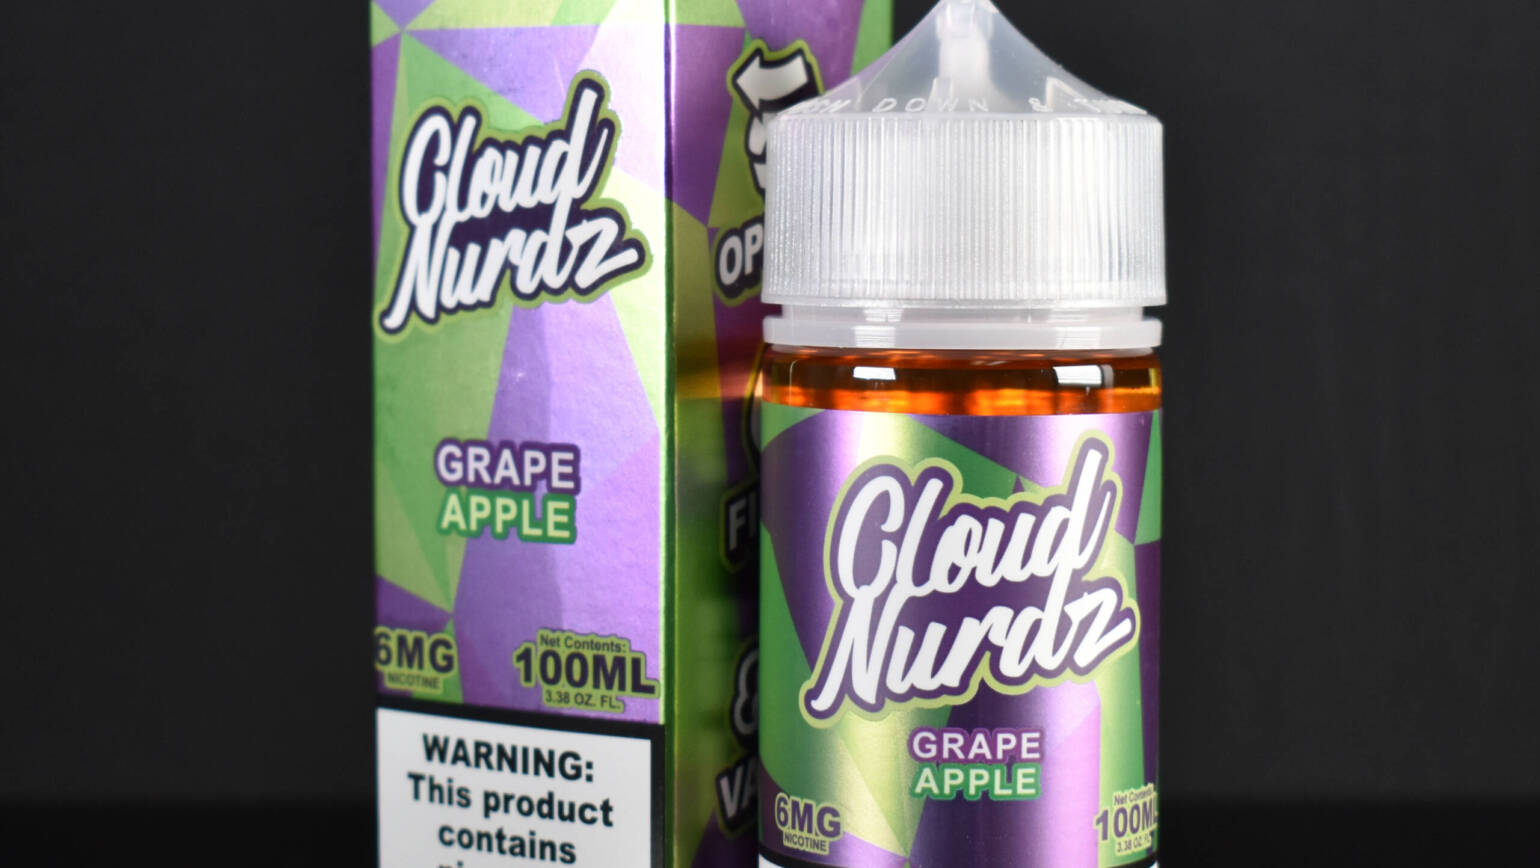 Cloud Nurdz – Grape Apple